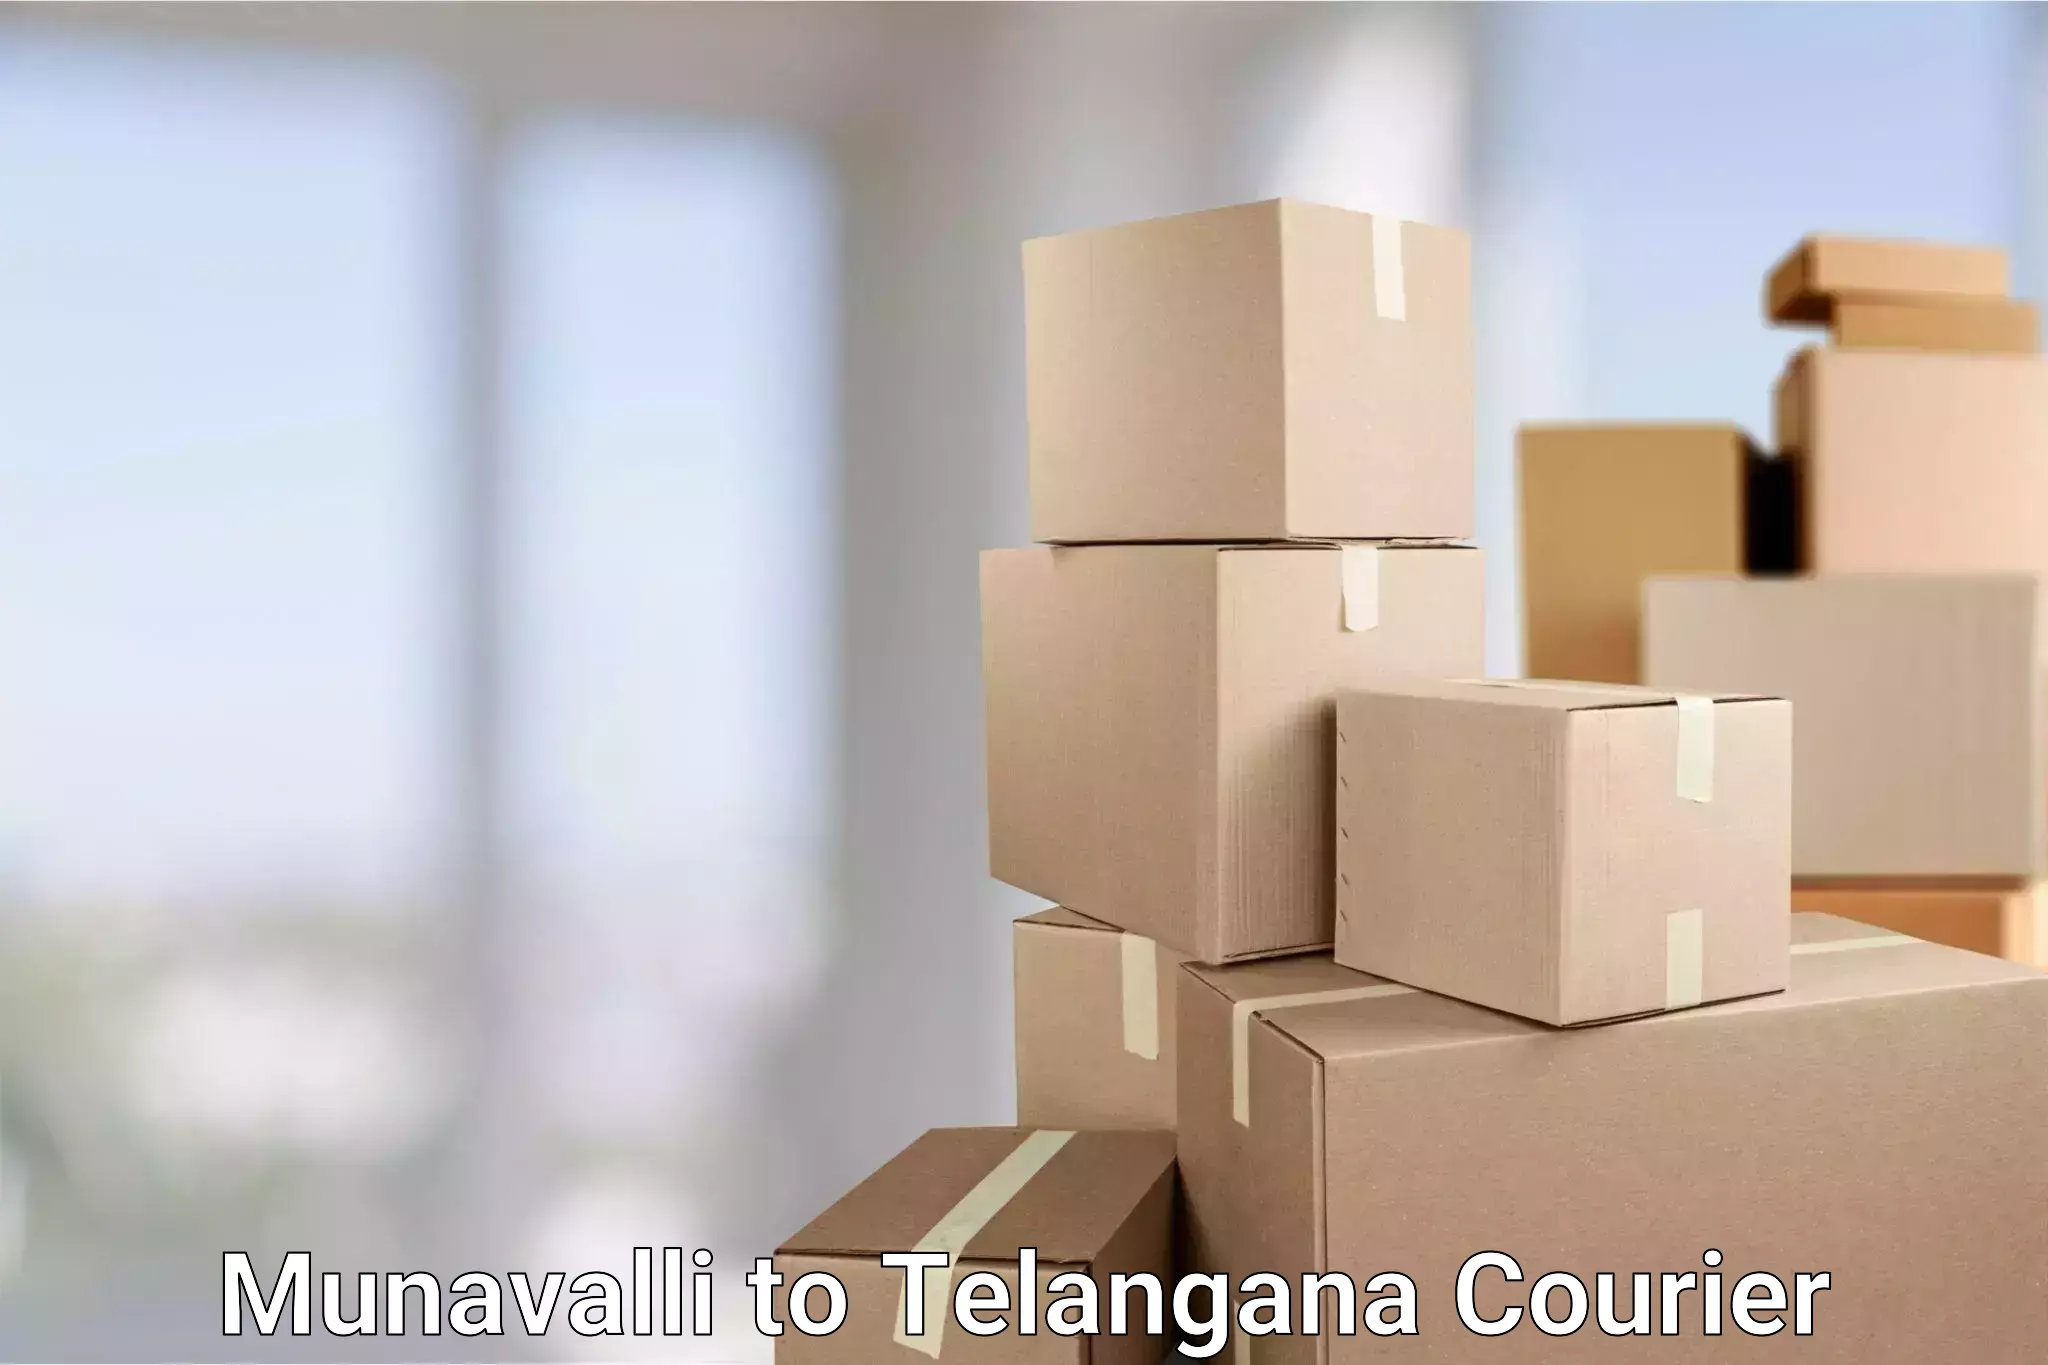 Courier service comparison in Munavalli to Warangal